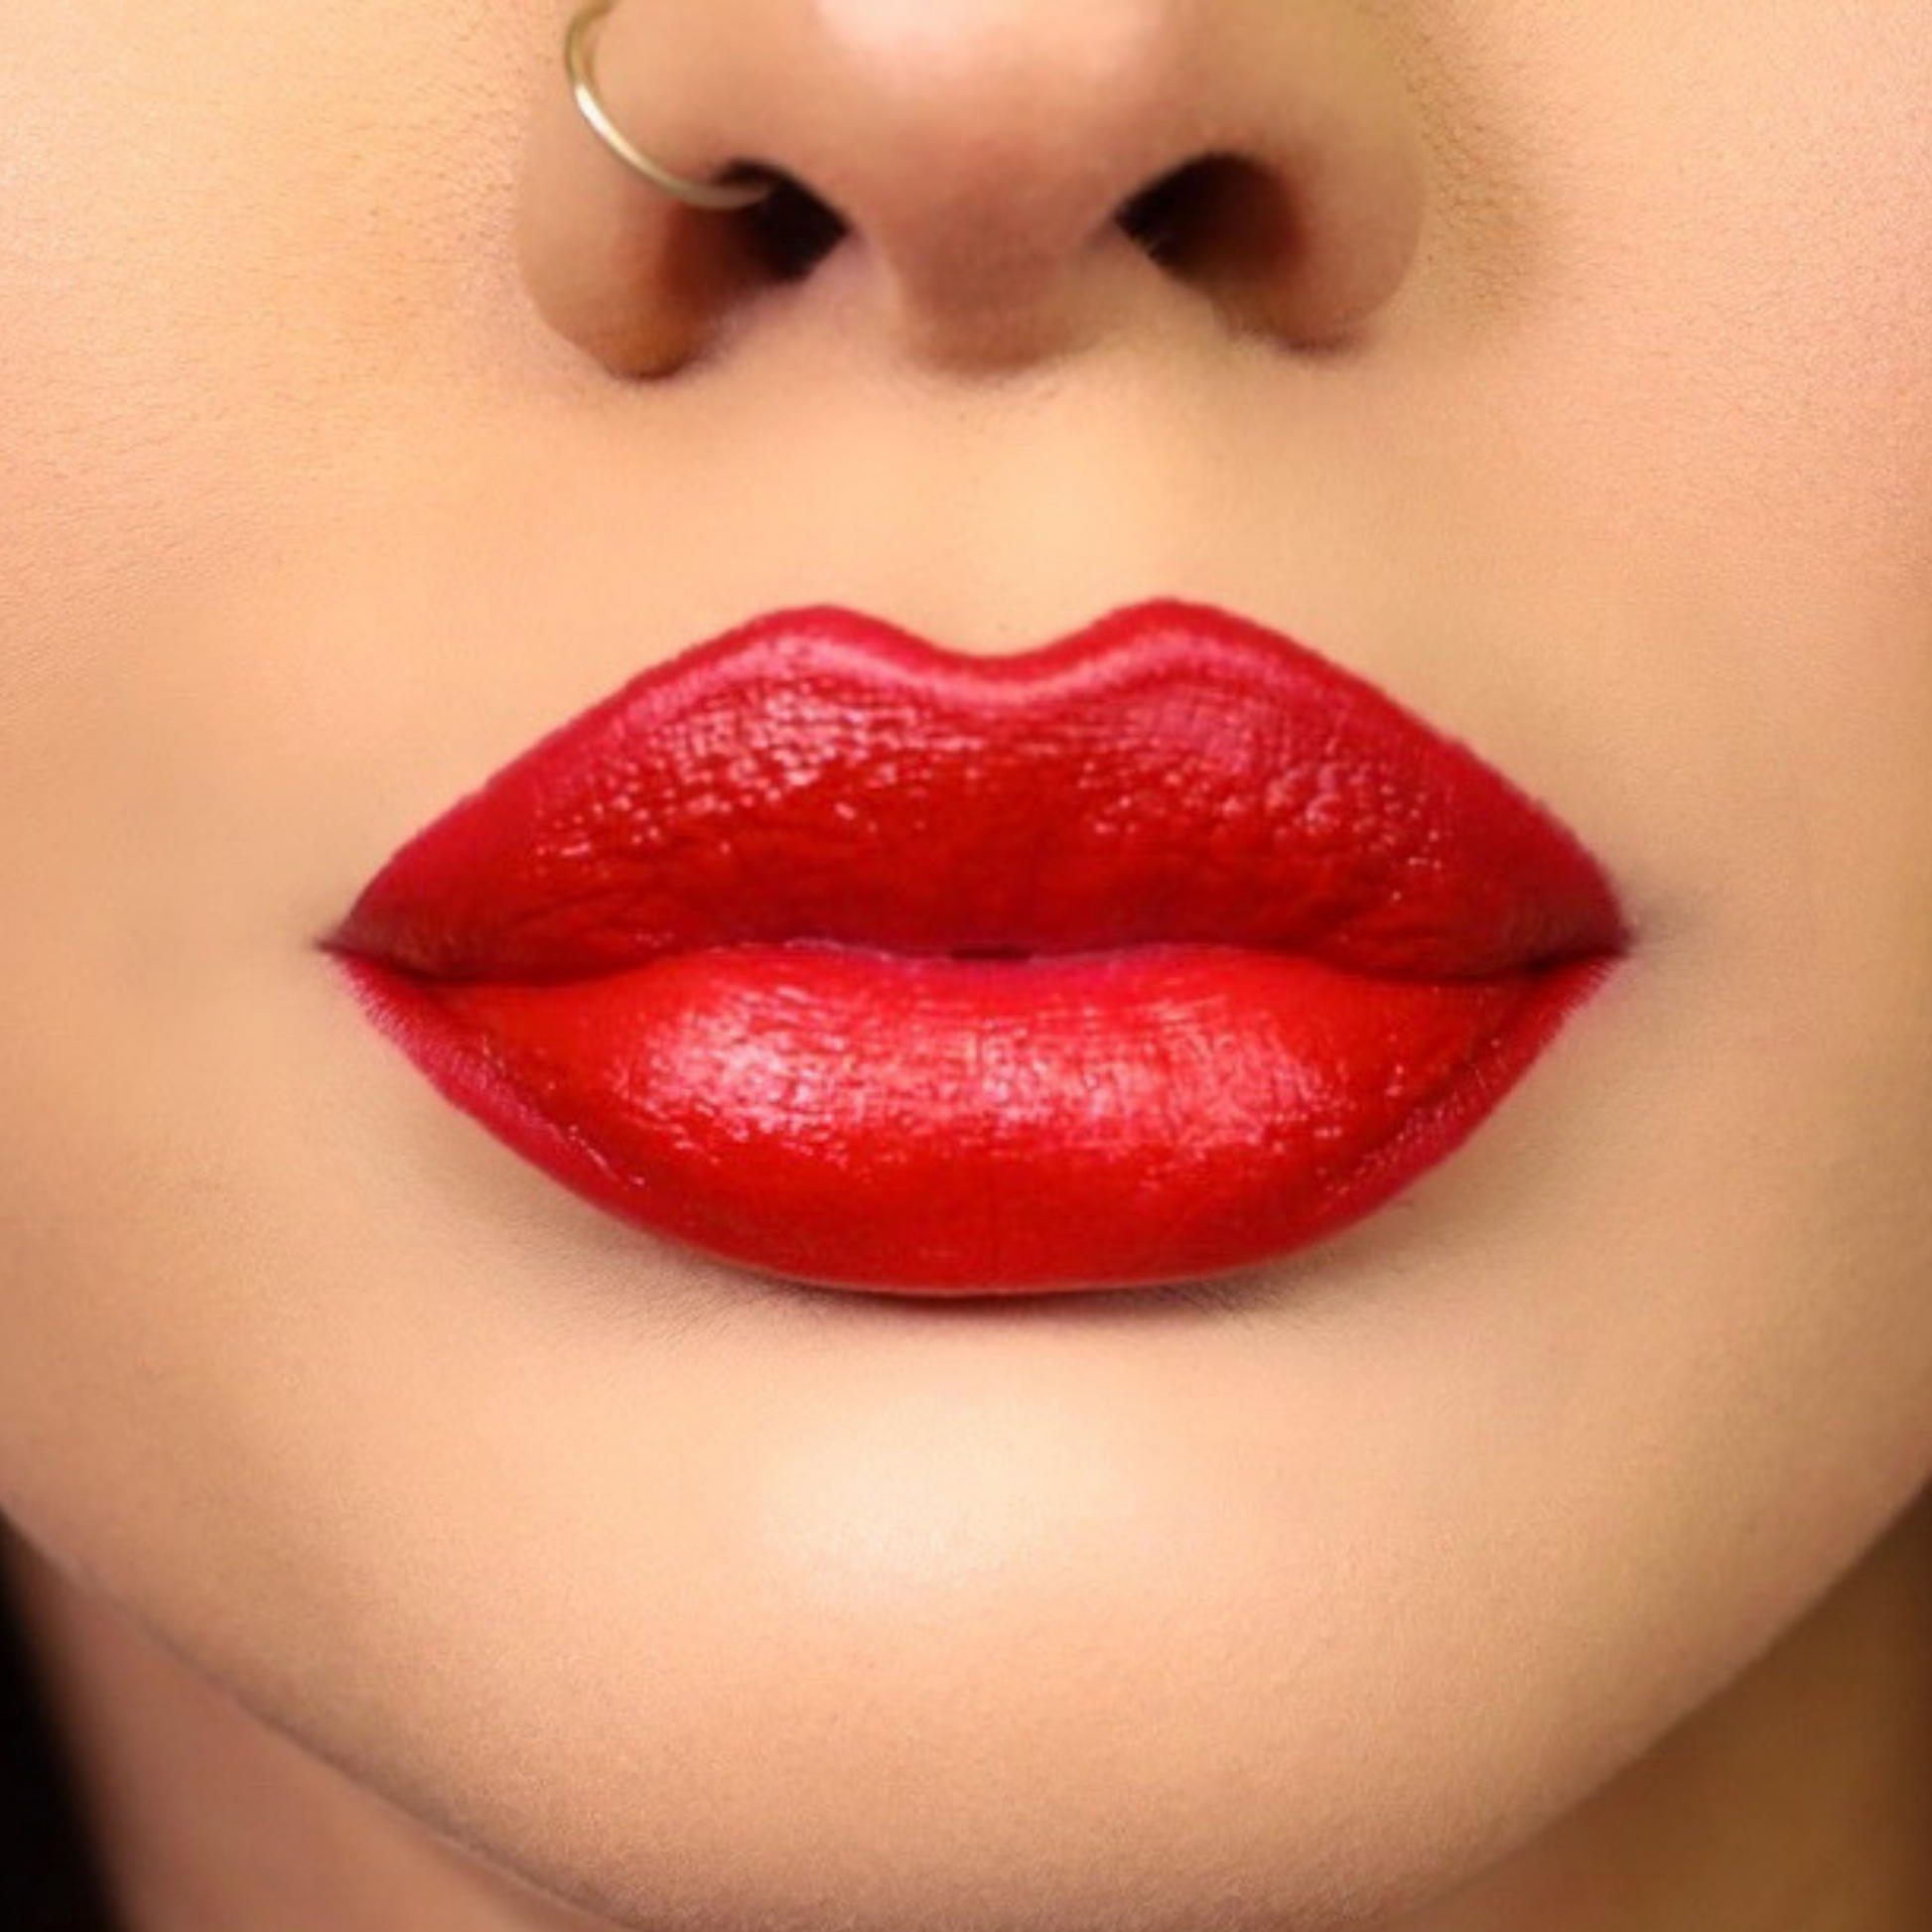 hver dag Korridor sponsor Award-winning Brava is the only red lipstick you need. - Reina Rebelde